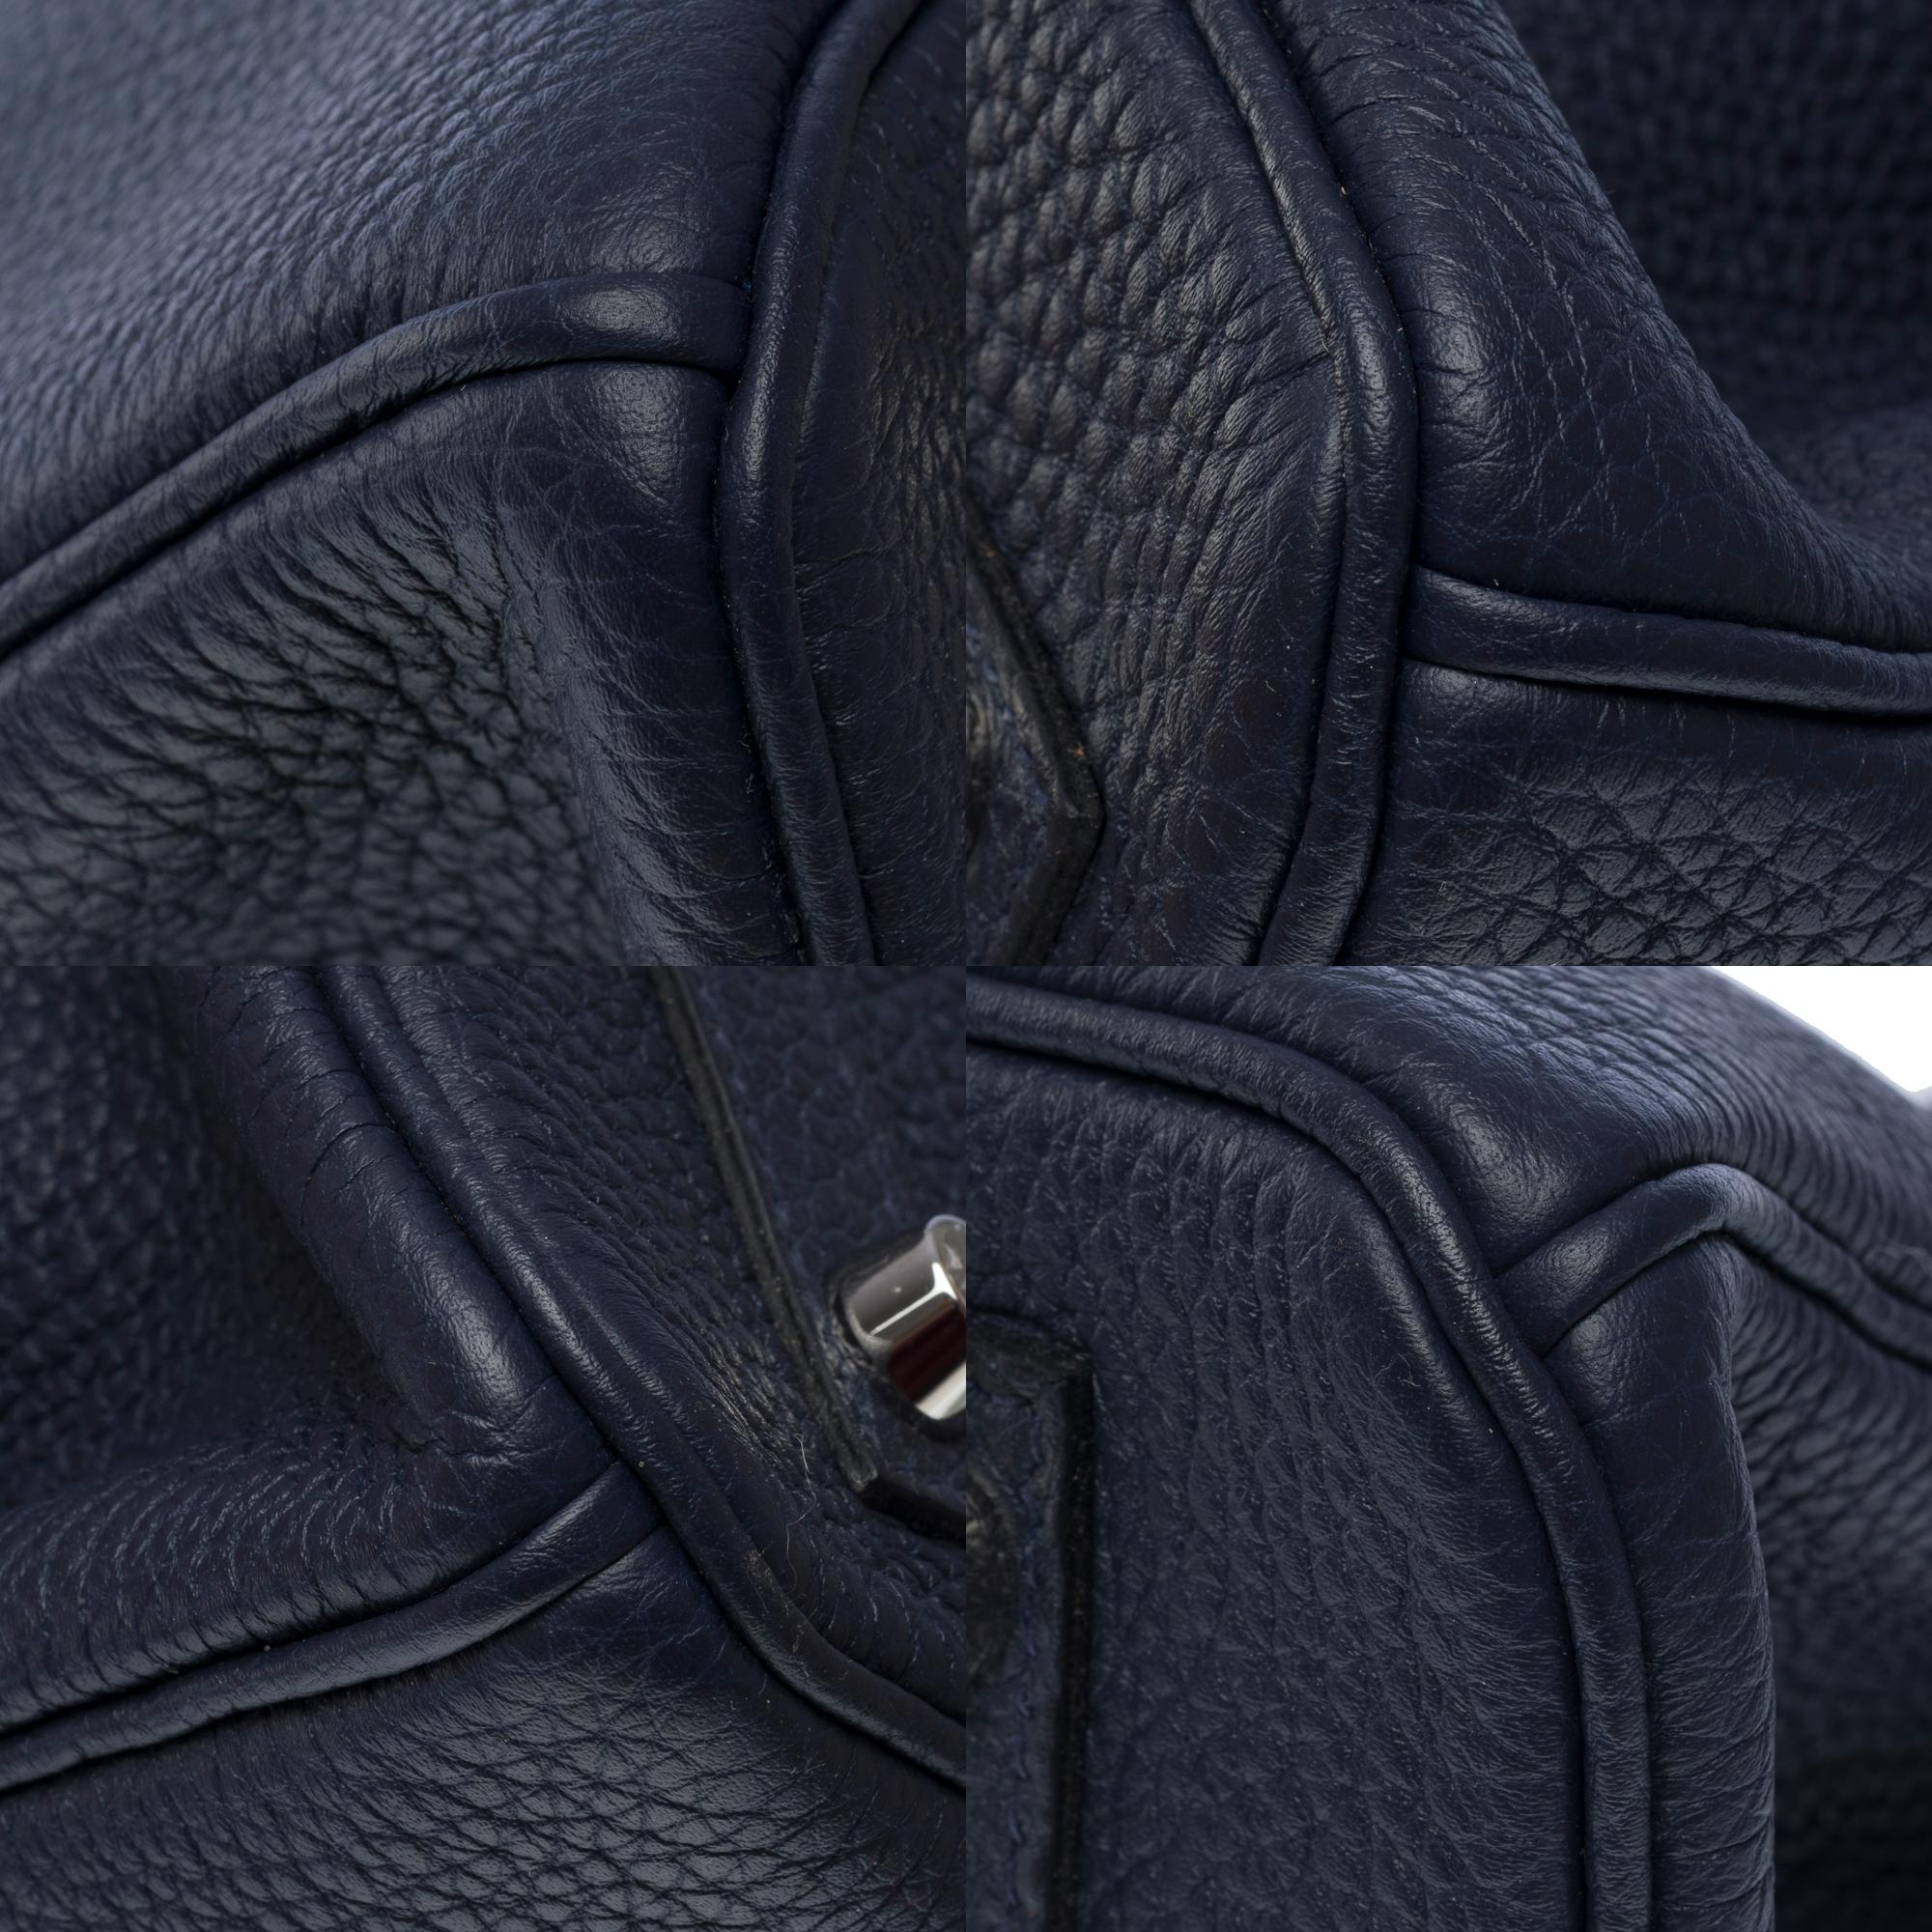 Hermes Birkin 30 handbag in Bleu nuit Togo leather, SHW For Sale 8